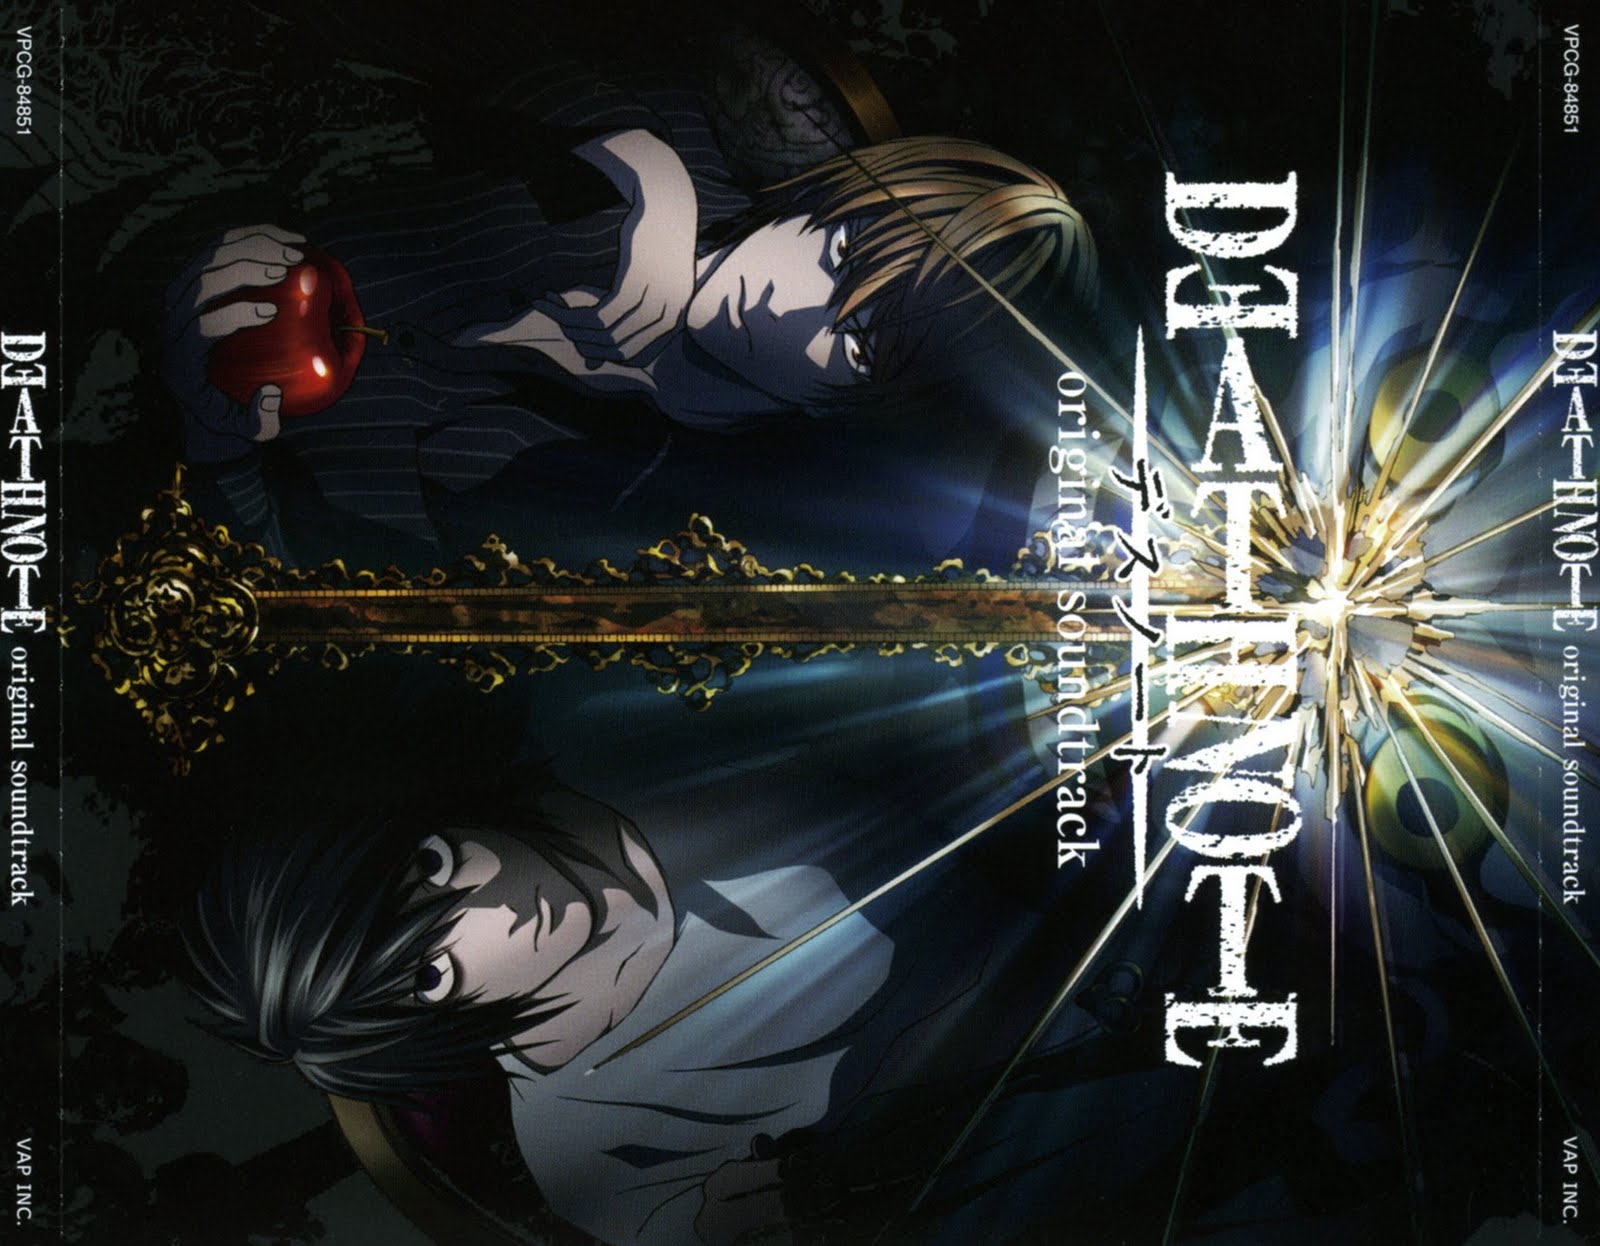 Тетрадь смерти саундтрек. Death Note OST. Death Note OST 1. Тетрадь смерти ОСТ обложка.